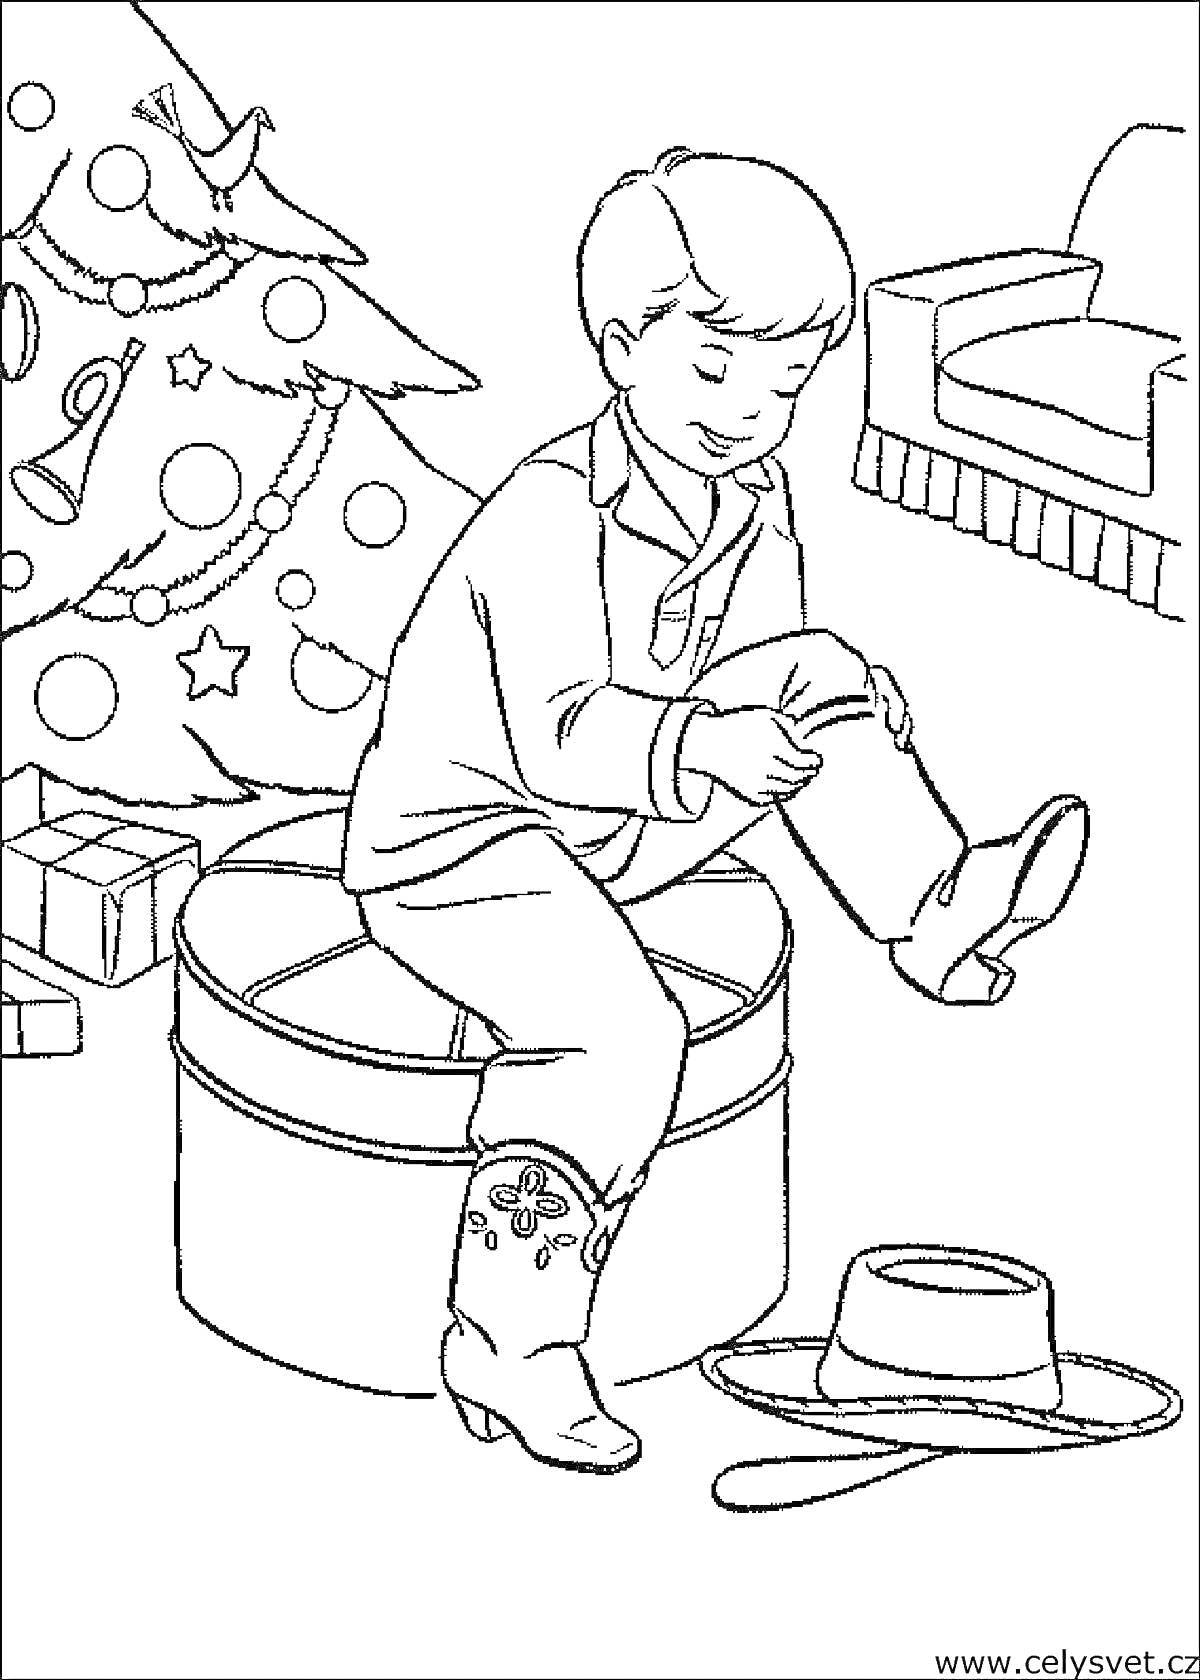 Мальчик в ковбойских сапогах возле рождественской ёлки